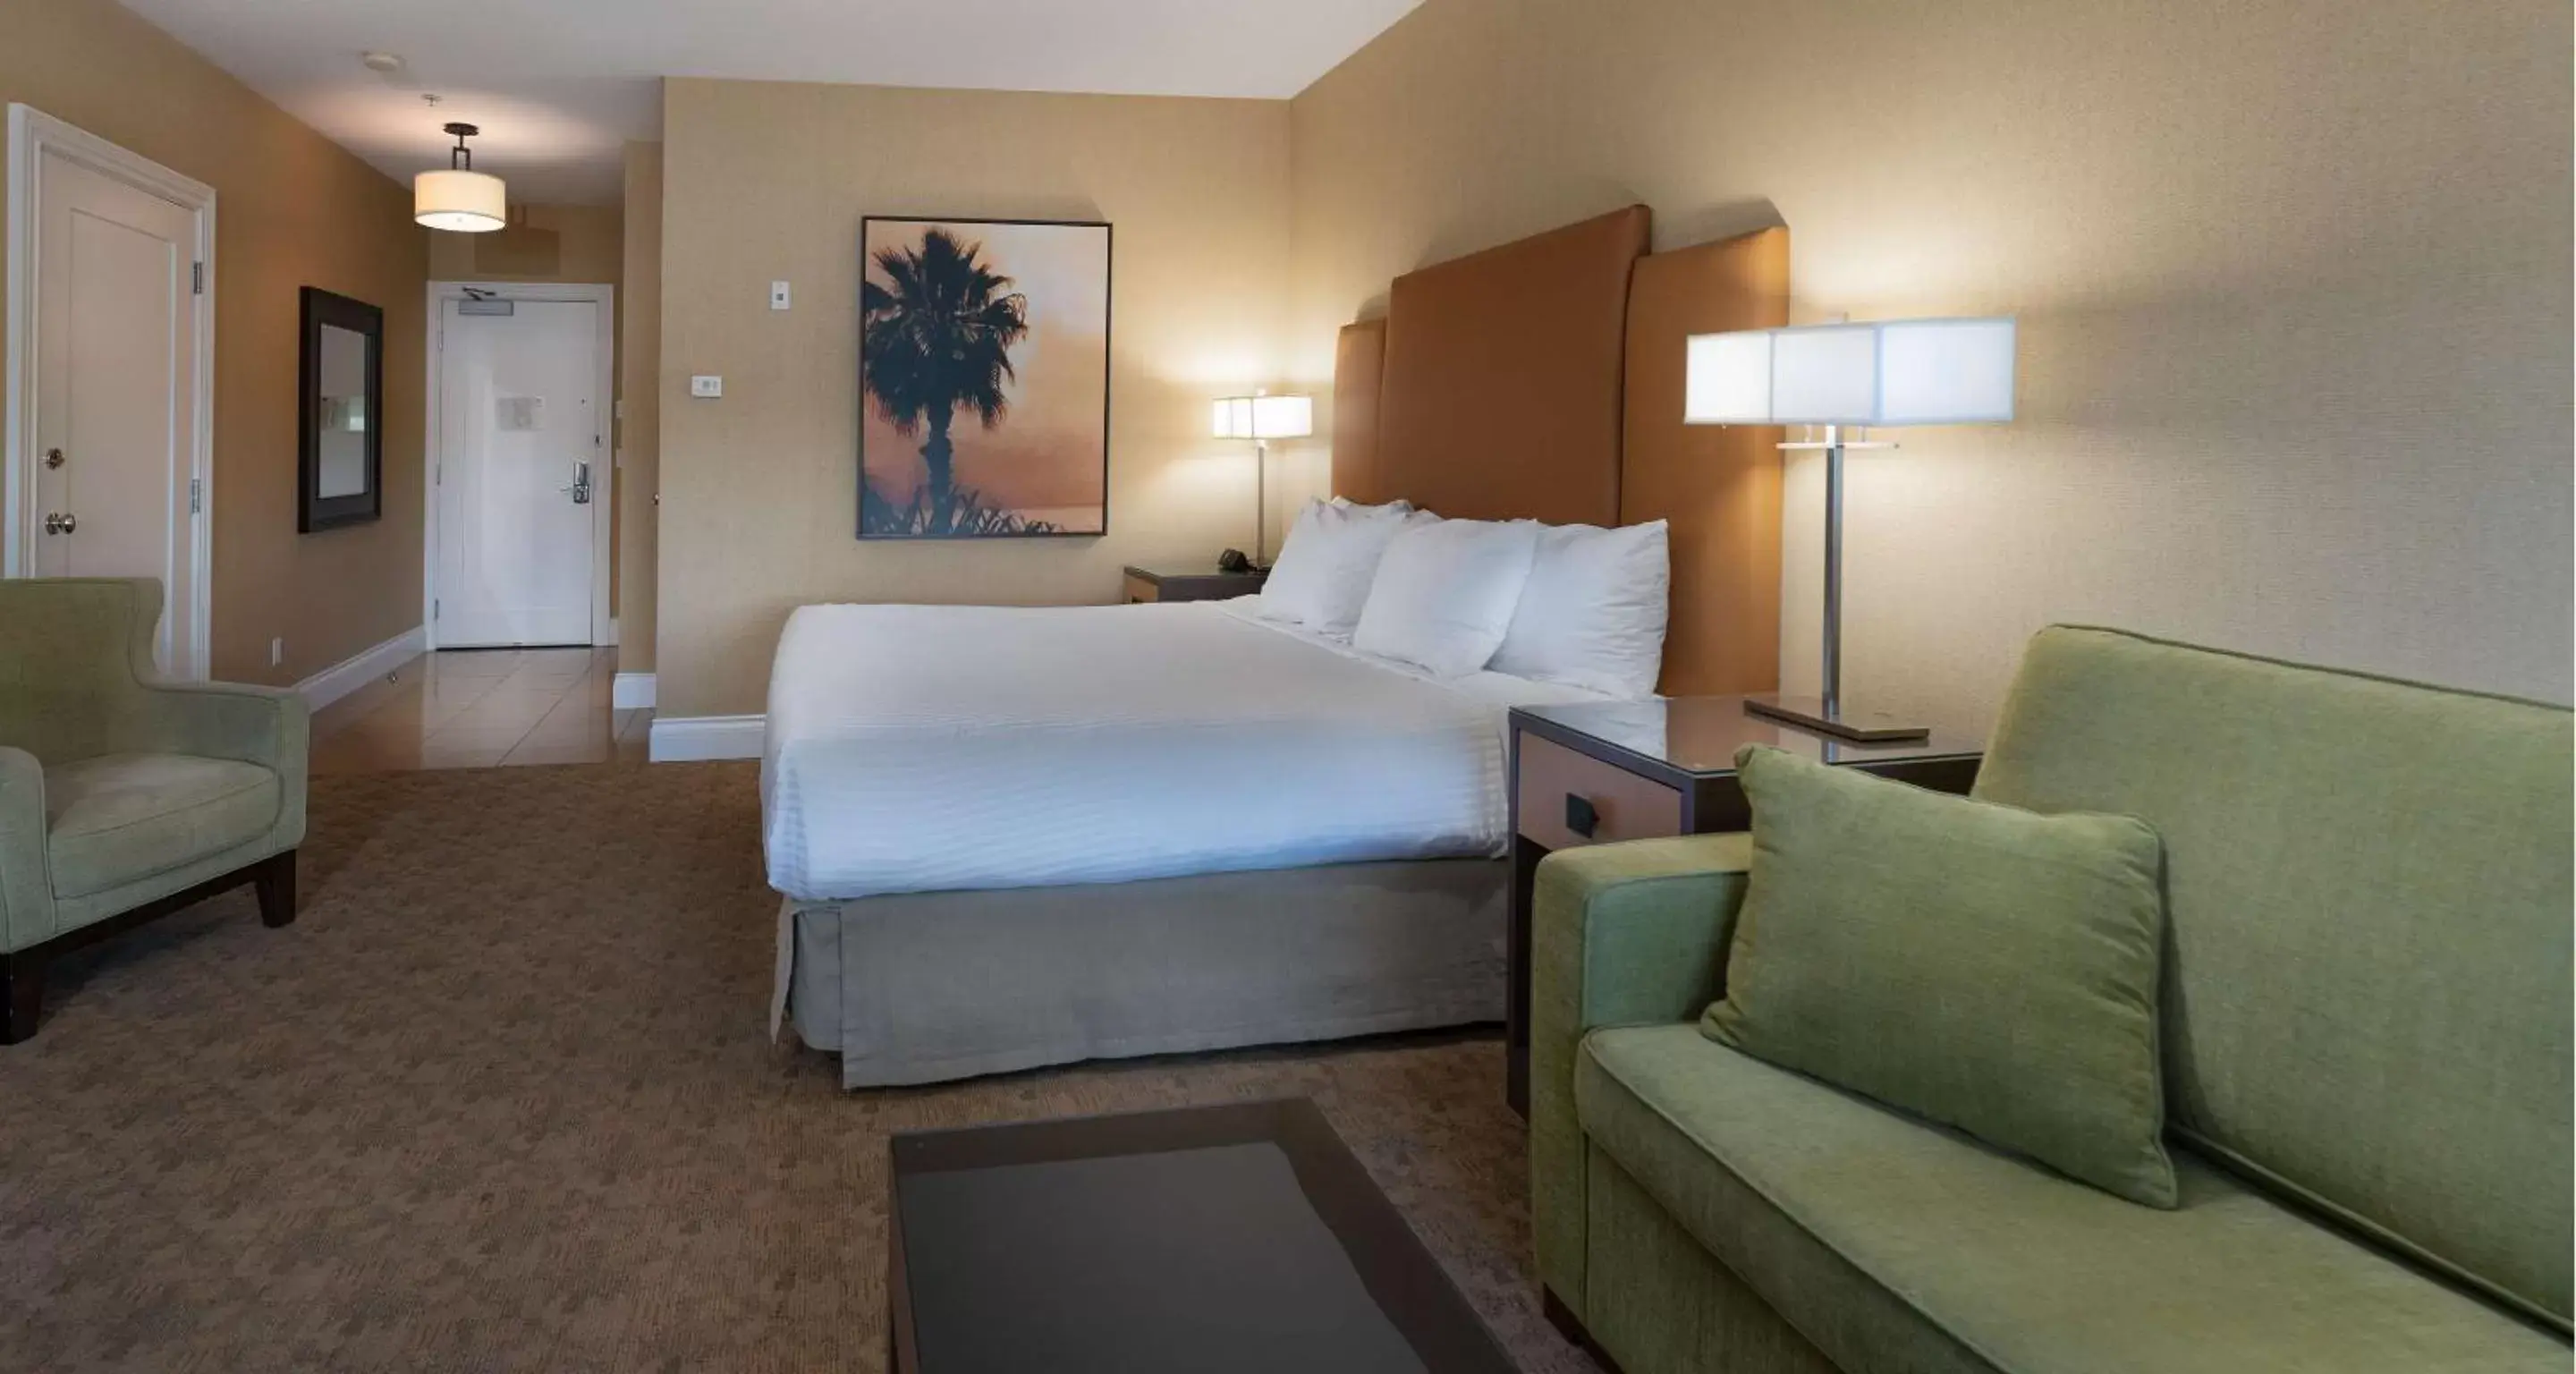 Bedroom in Prestige Oceanfront Resort, WorldHotels Luxury